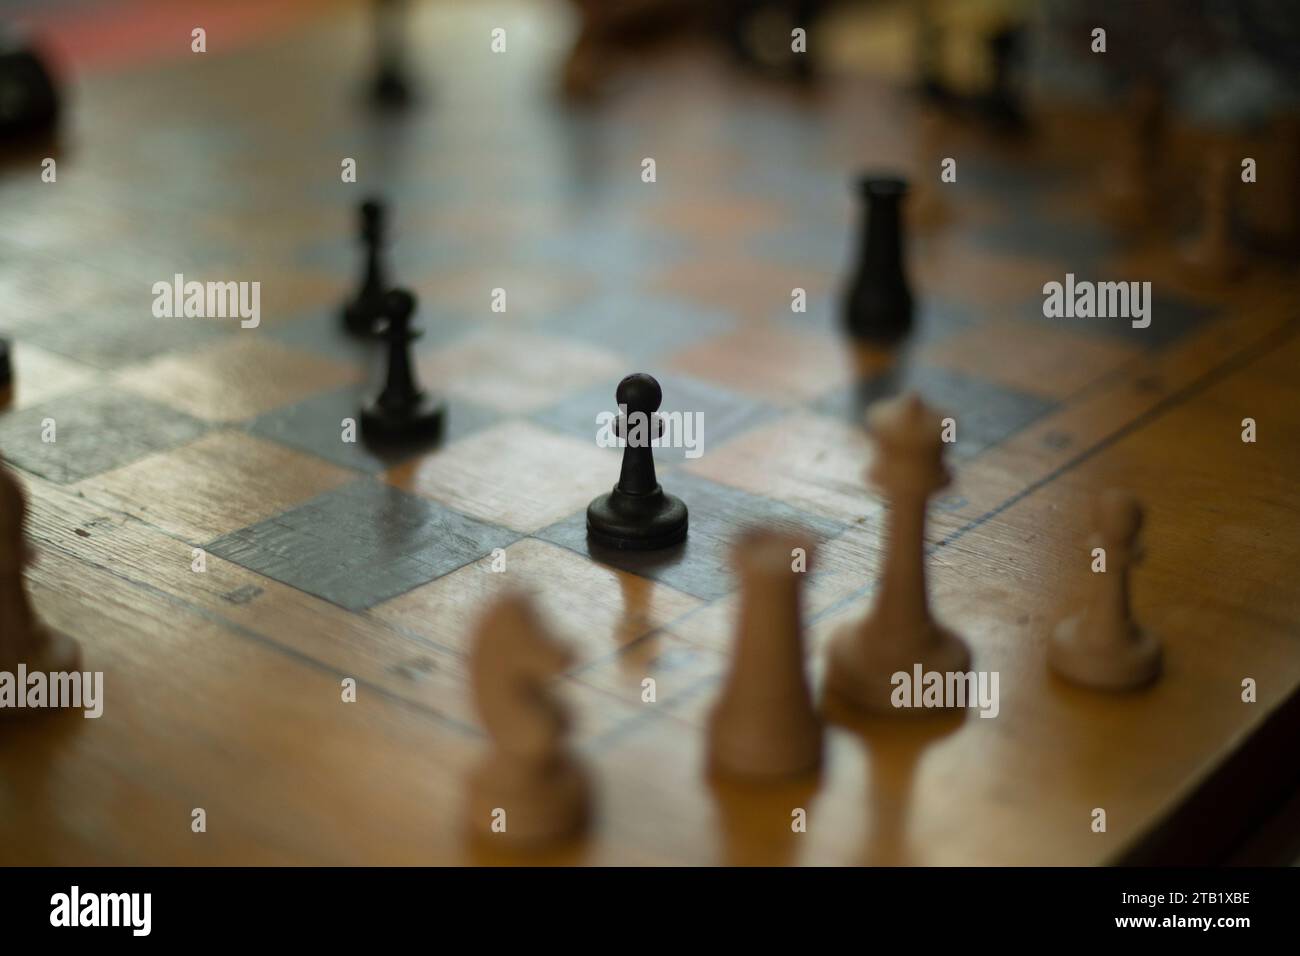 Partita a scacchi. Competizione sportiva. Pezzi da scacchi a bordo. Foto Stock